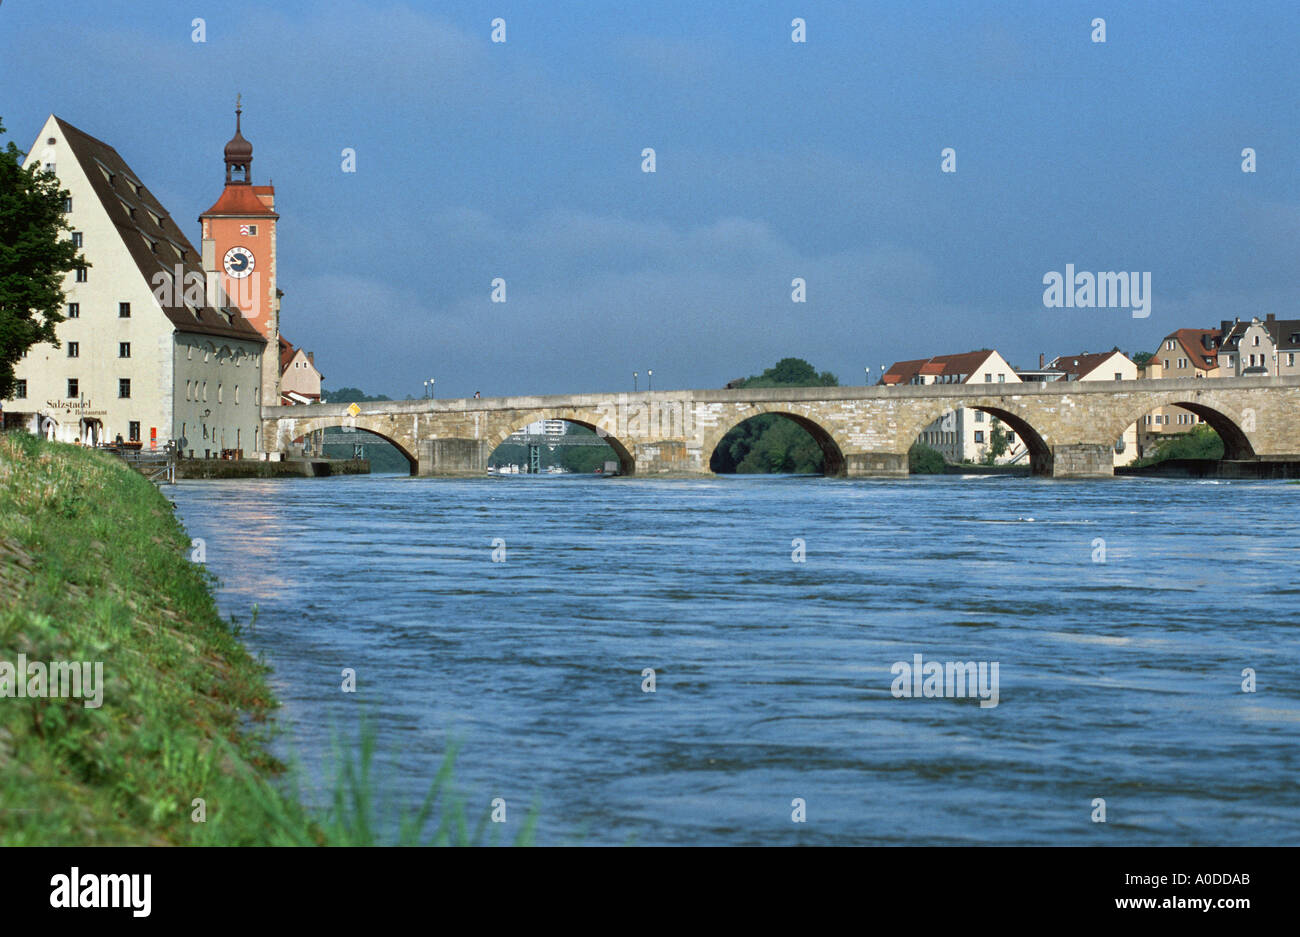 REGENSBURG riverside antico ponte in pietra Steinerne Brücke Salzstadel Danubio vecchio ponte in pietra famoso il patrimonio culturale mondiale Foto Stock